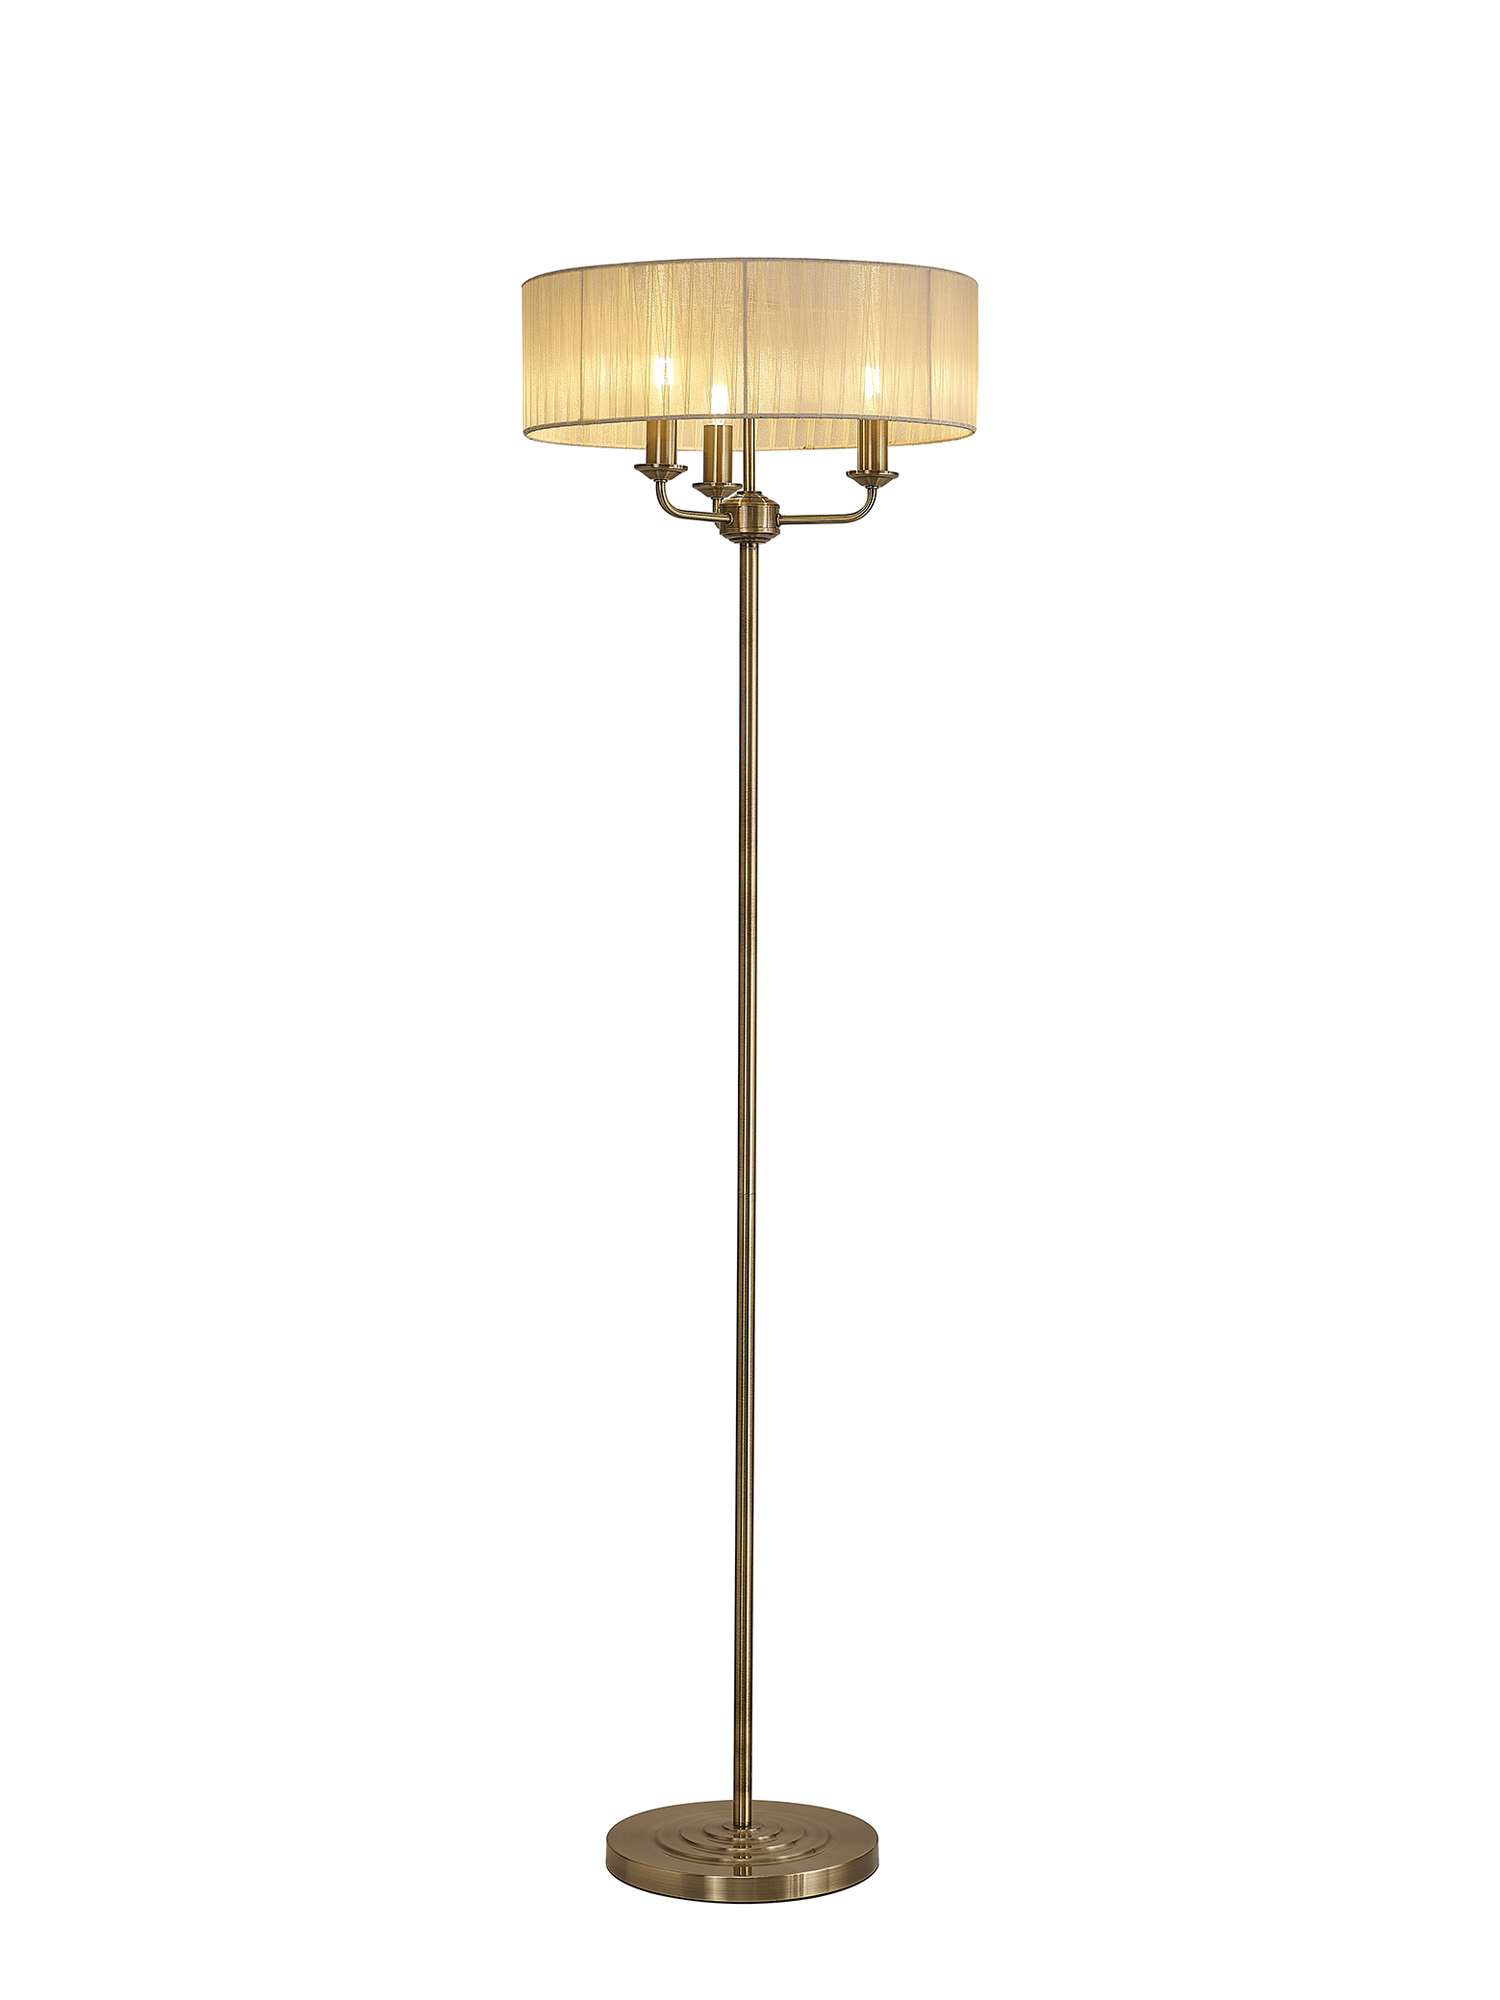 DK0907  Banyan 45cm 3 Light Floor Lamp Antique Brass; Cream